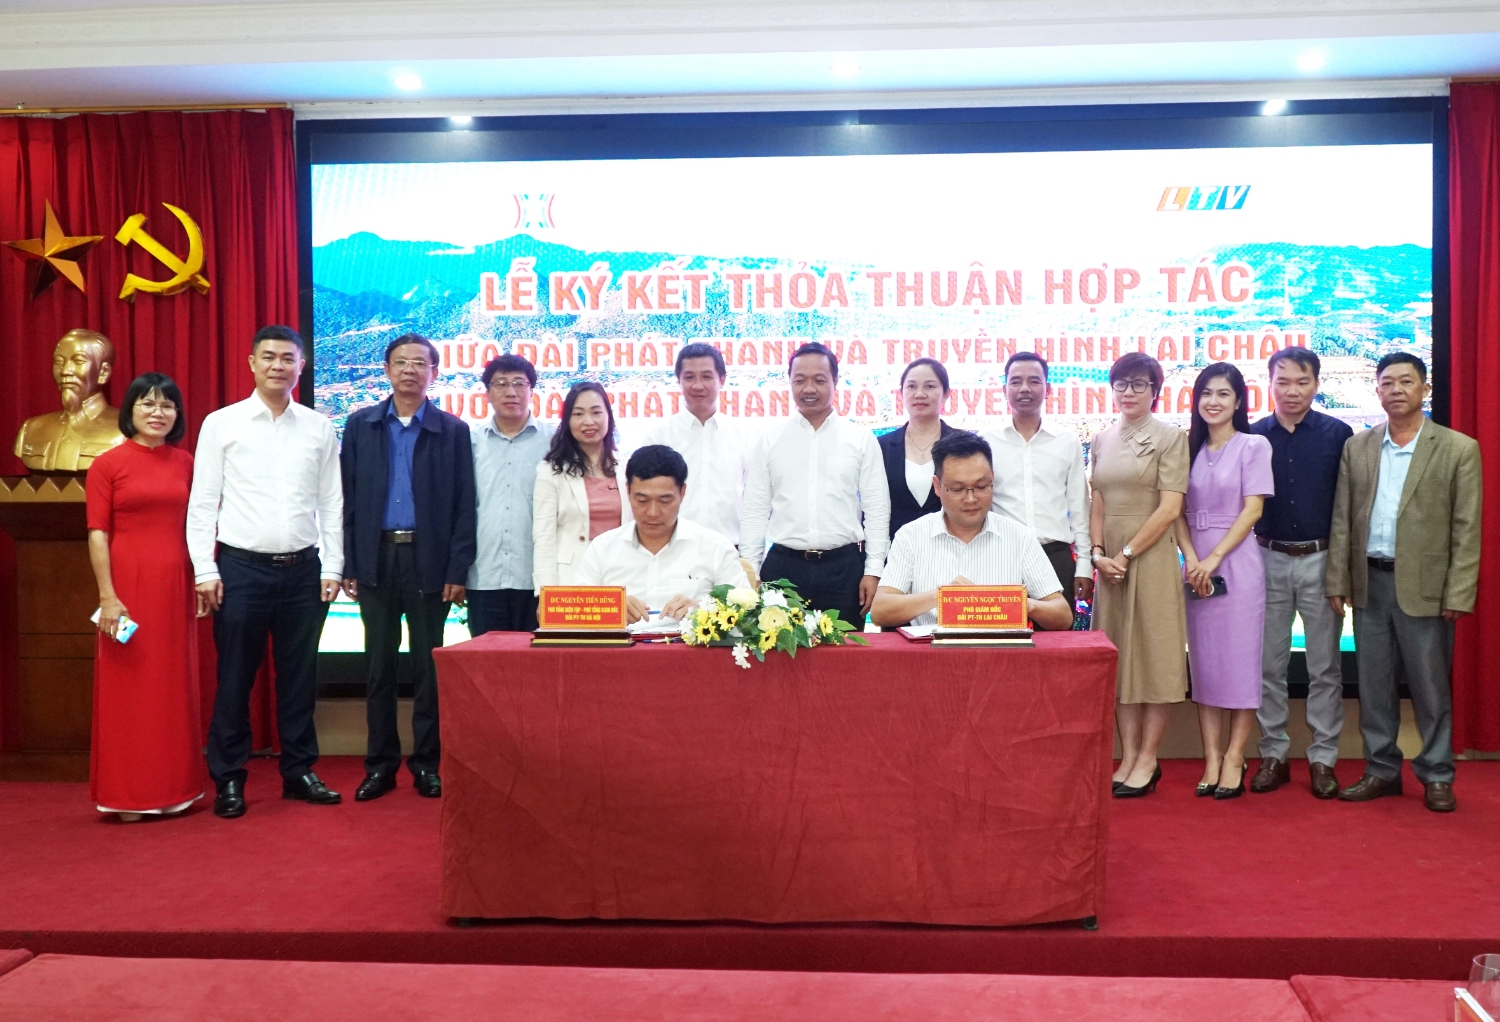 Ký kết thỏa thuận hợp tác tuyên truyền sản xuất chương trình giữa Đài Phát thanh – Truyền hình Lai Châu và Đài Phát thanh – Truyền hình Hà Nội